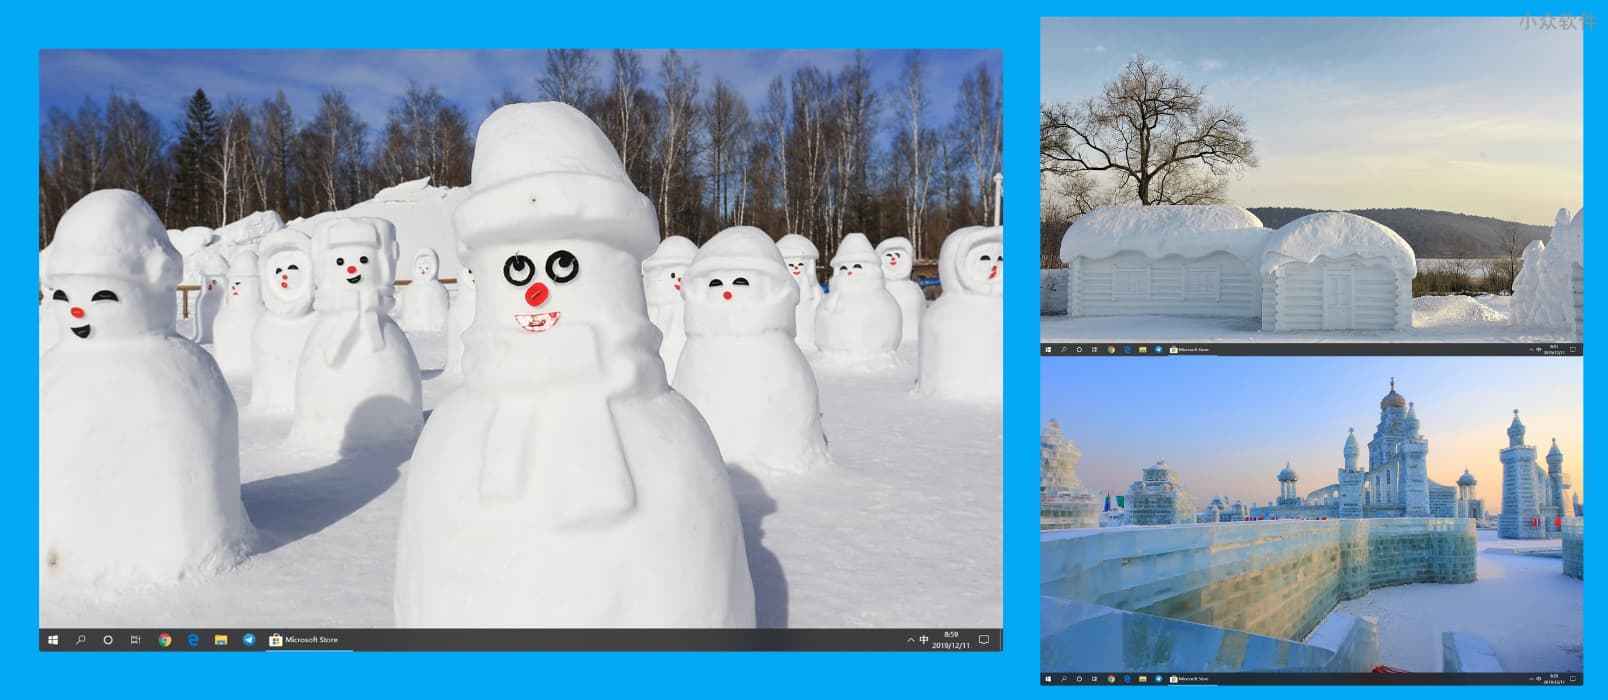 Snow Sculptures – 14 幅图像的 Windows 10 冬日雪景主题，微软官方主题